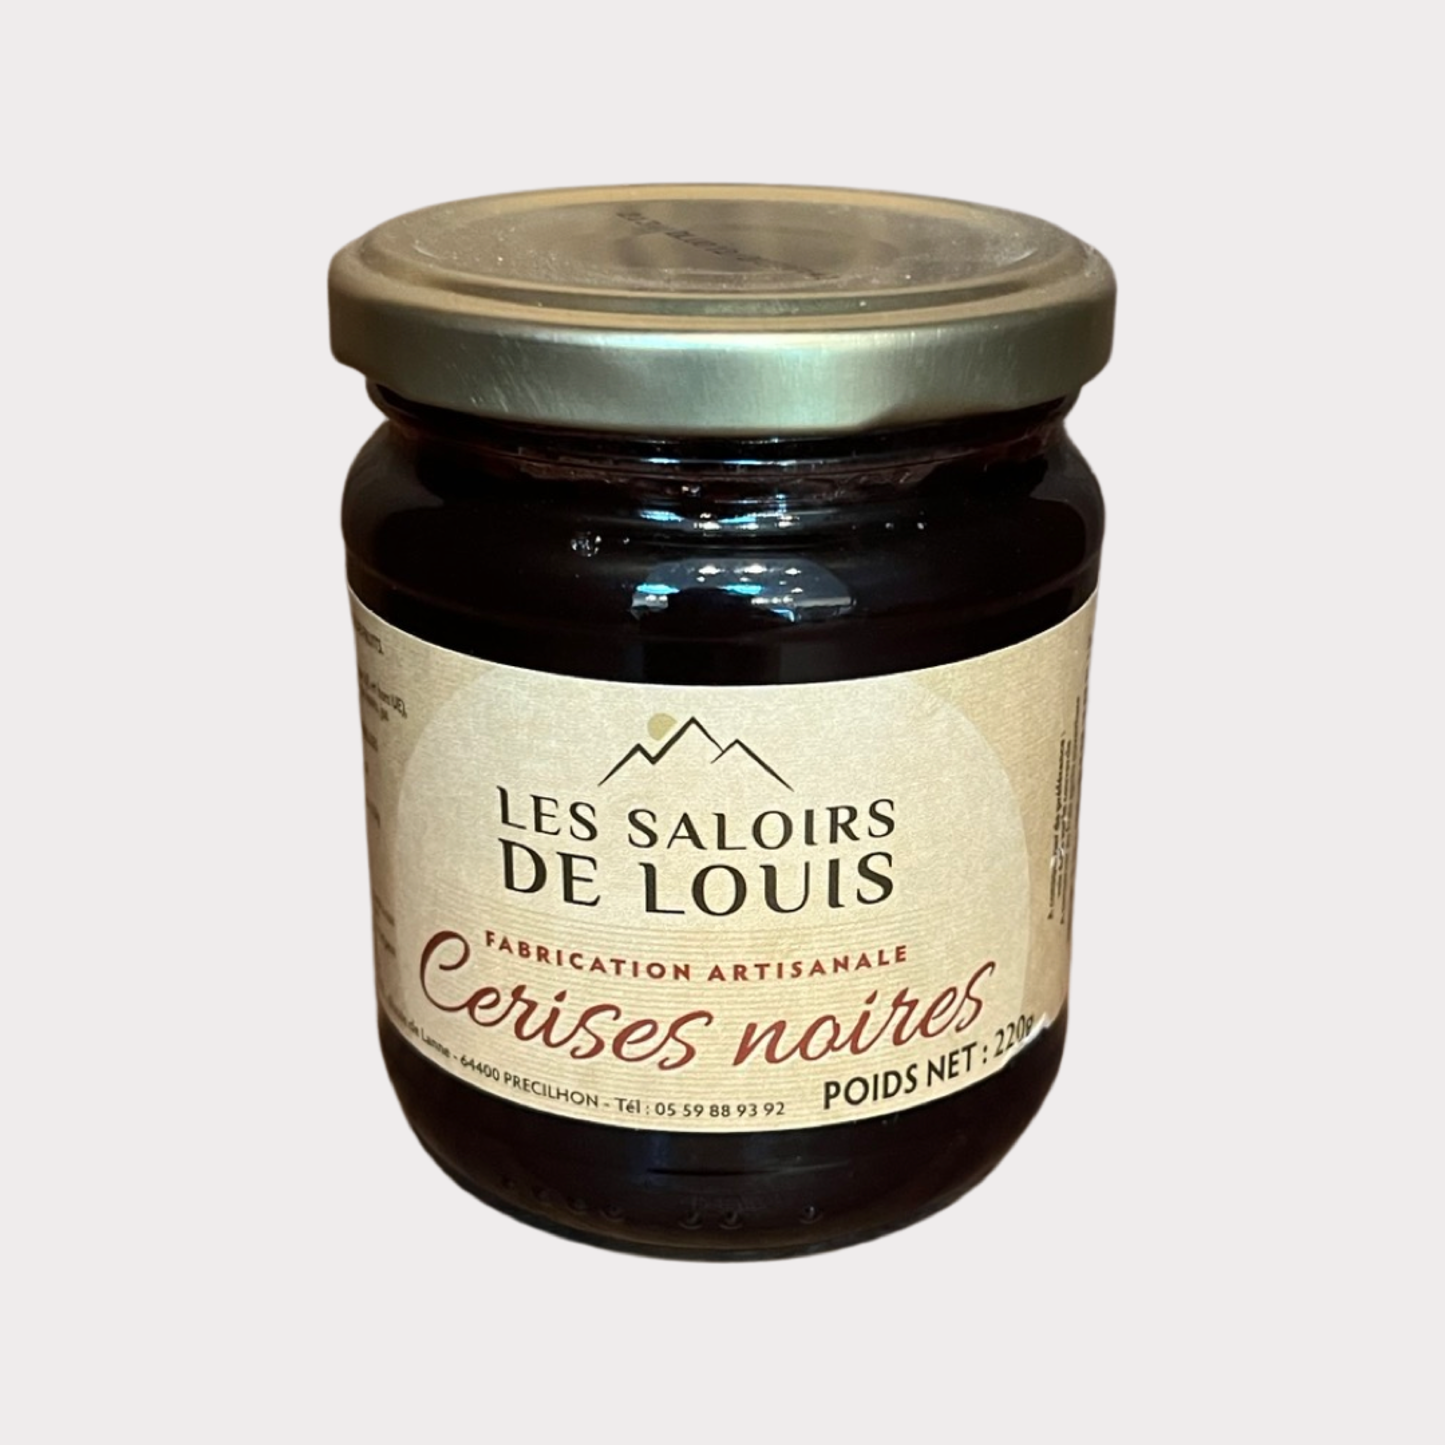 Les Saloirs de Louis - Basque Black Cherry Jam